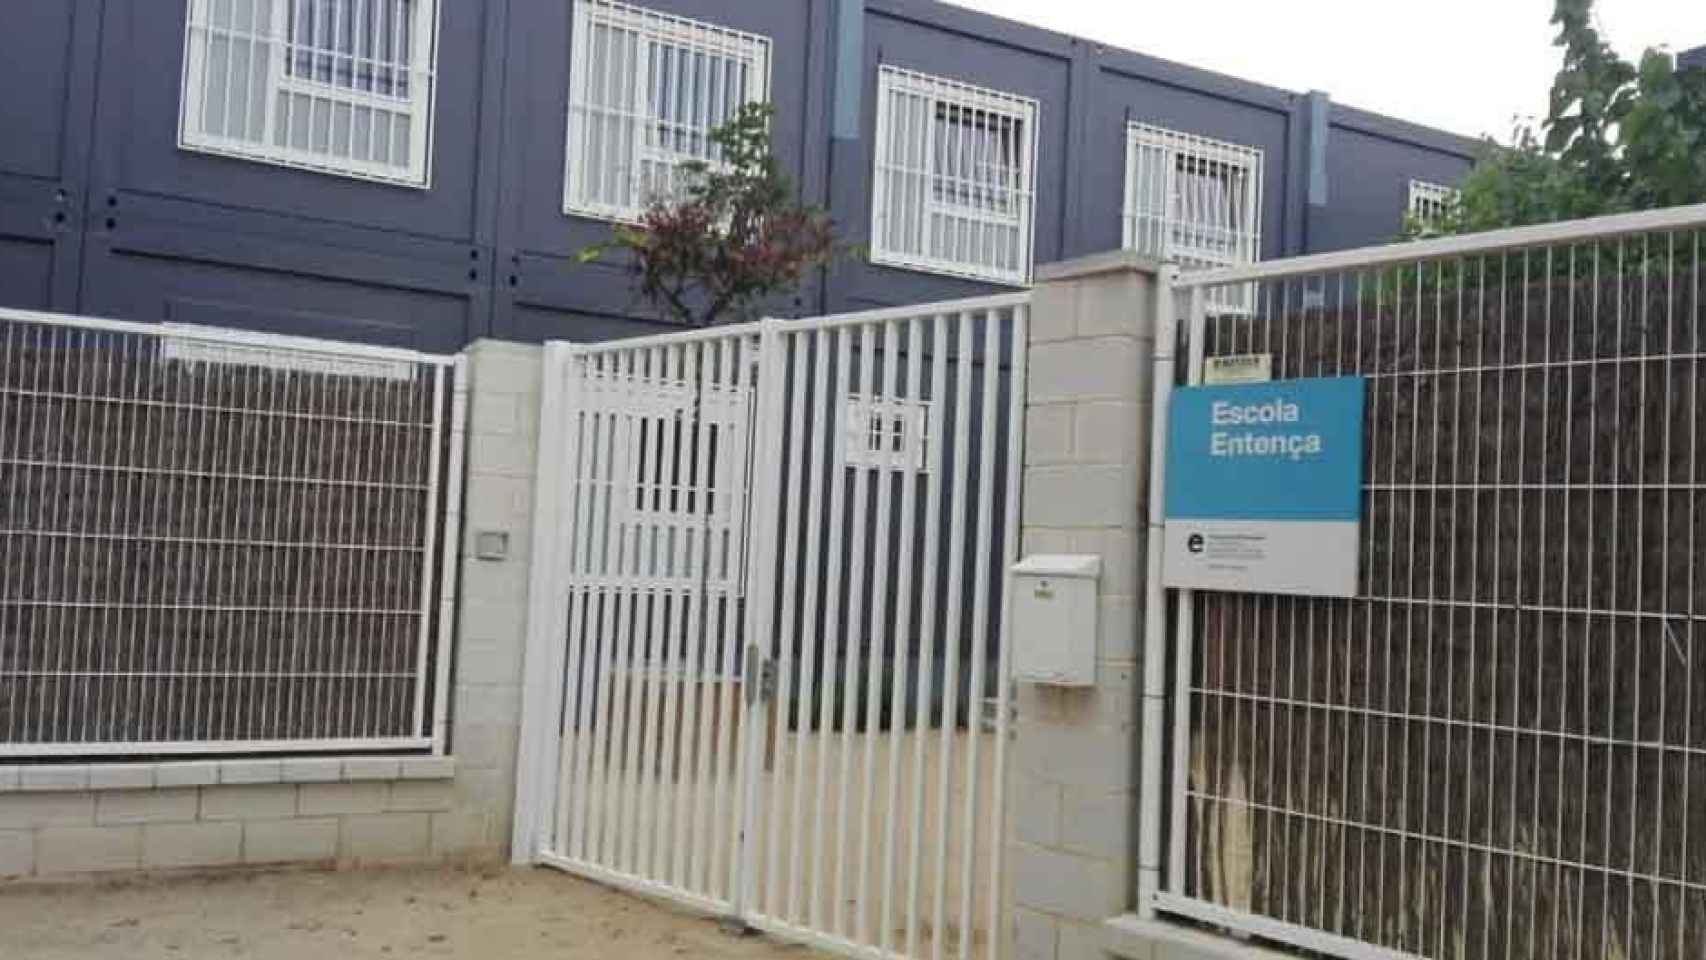 La Escola Entença de Barcelona está instalada en un barracón con graves deficiencias constructivas / CG